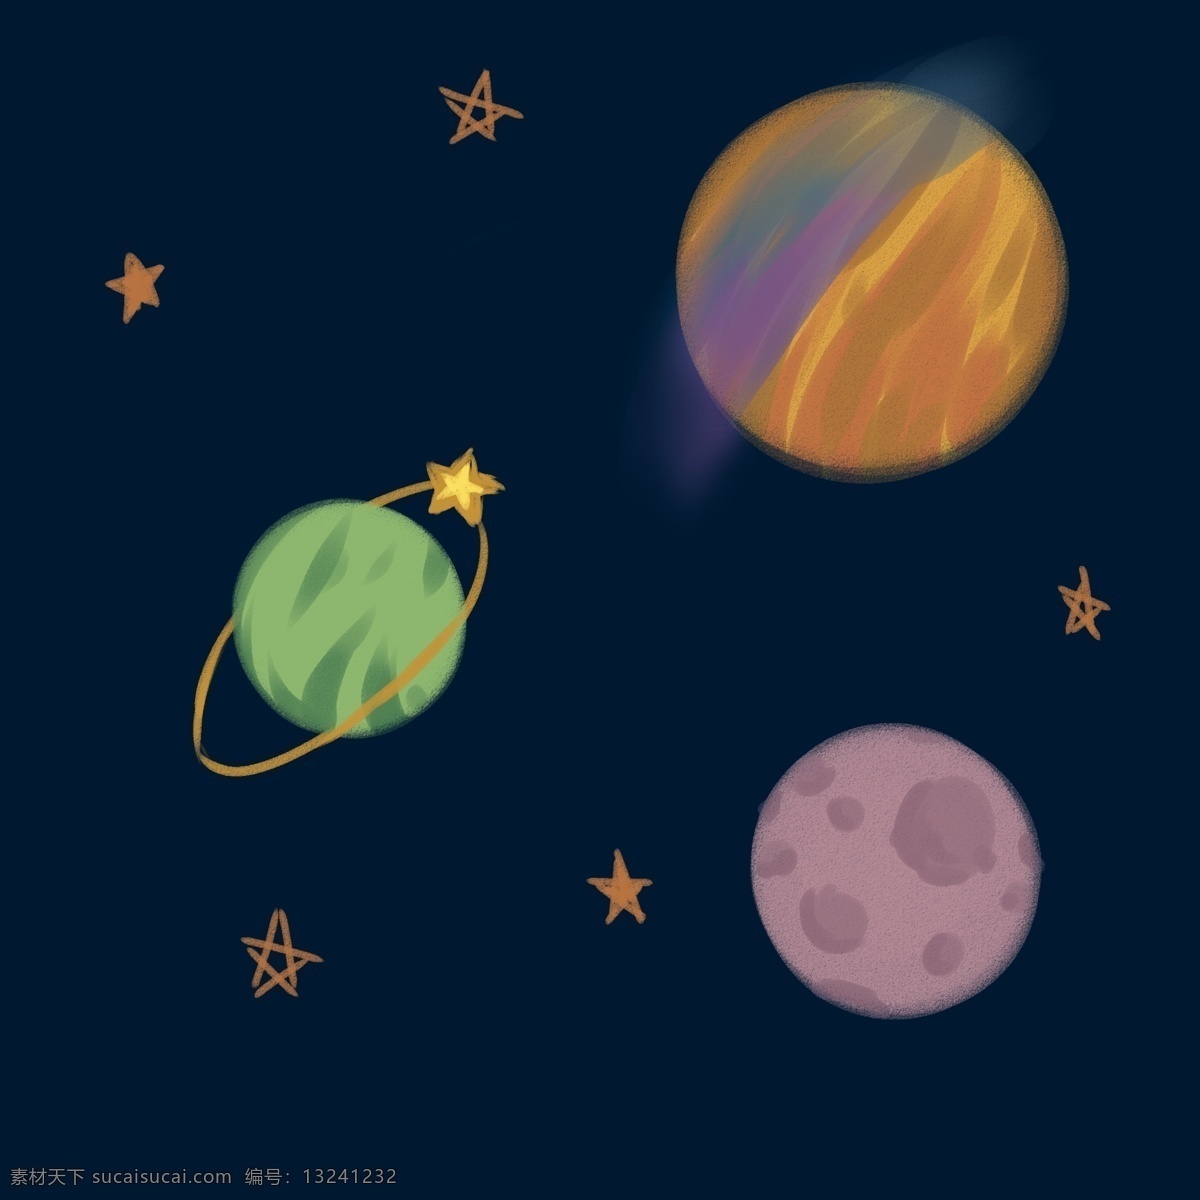 卡通 星球 星星 宇宙 星空 天文 主题 夜晚 夜空 星环 星际 幻想 星系 轨道 行星 插画 装饰